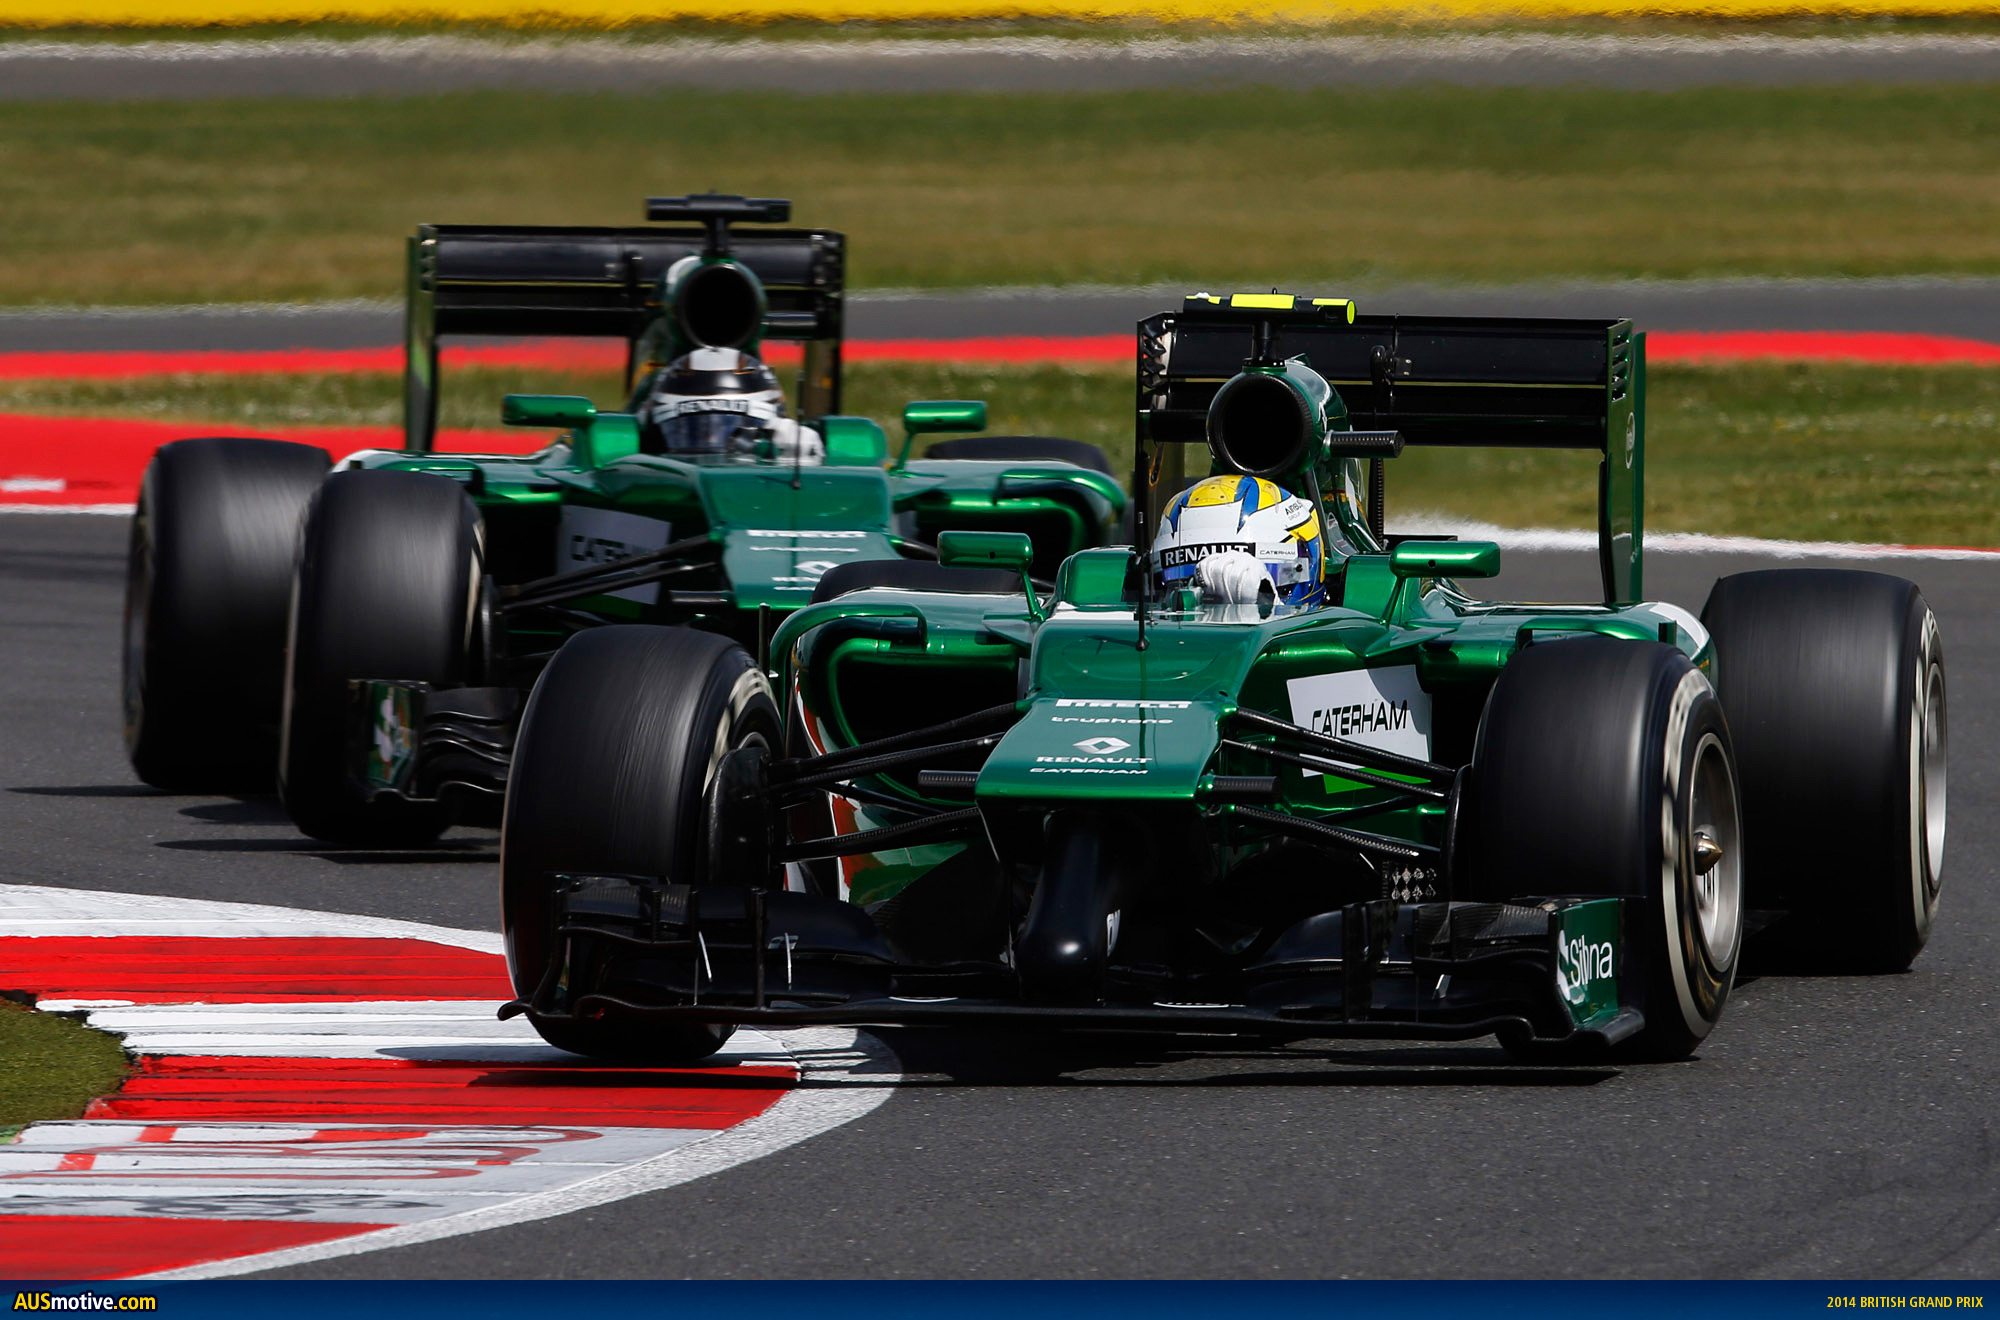 AUSmotive.com » 2014 British Grand Prix in pictures